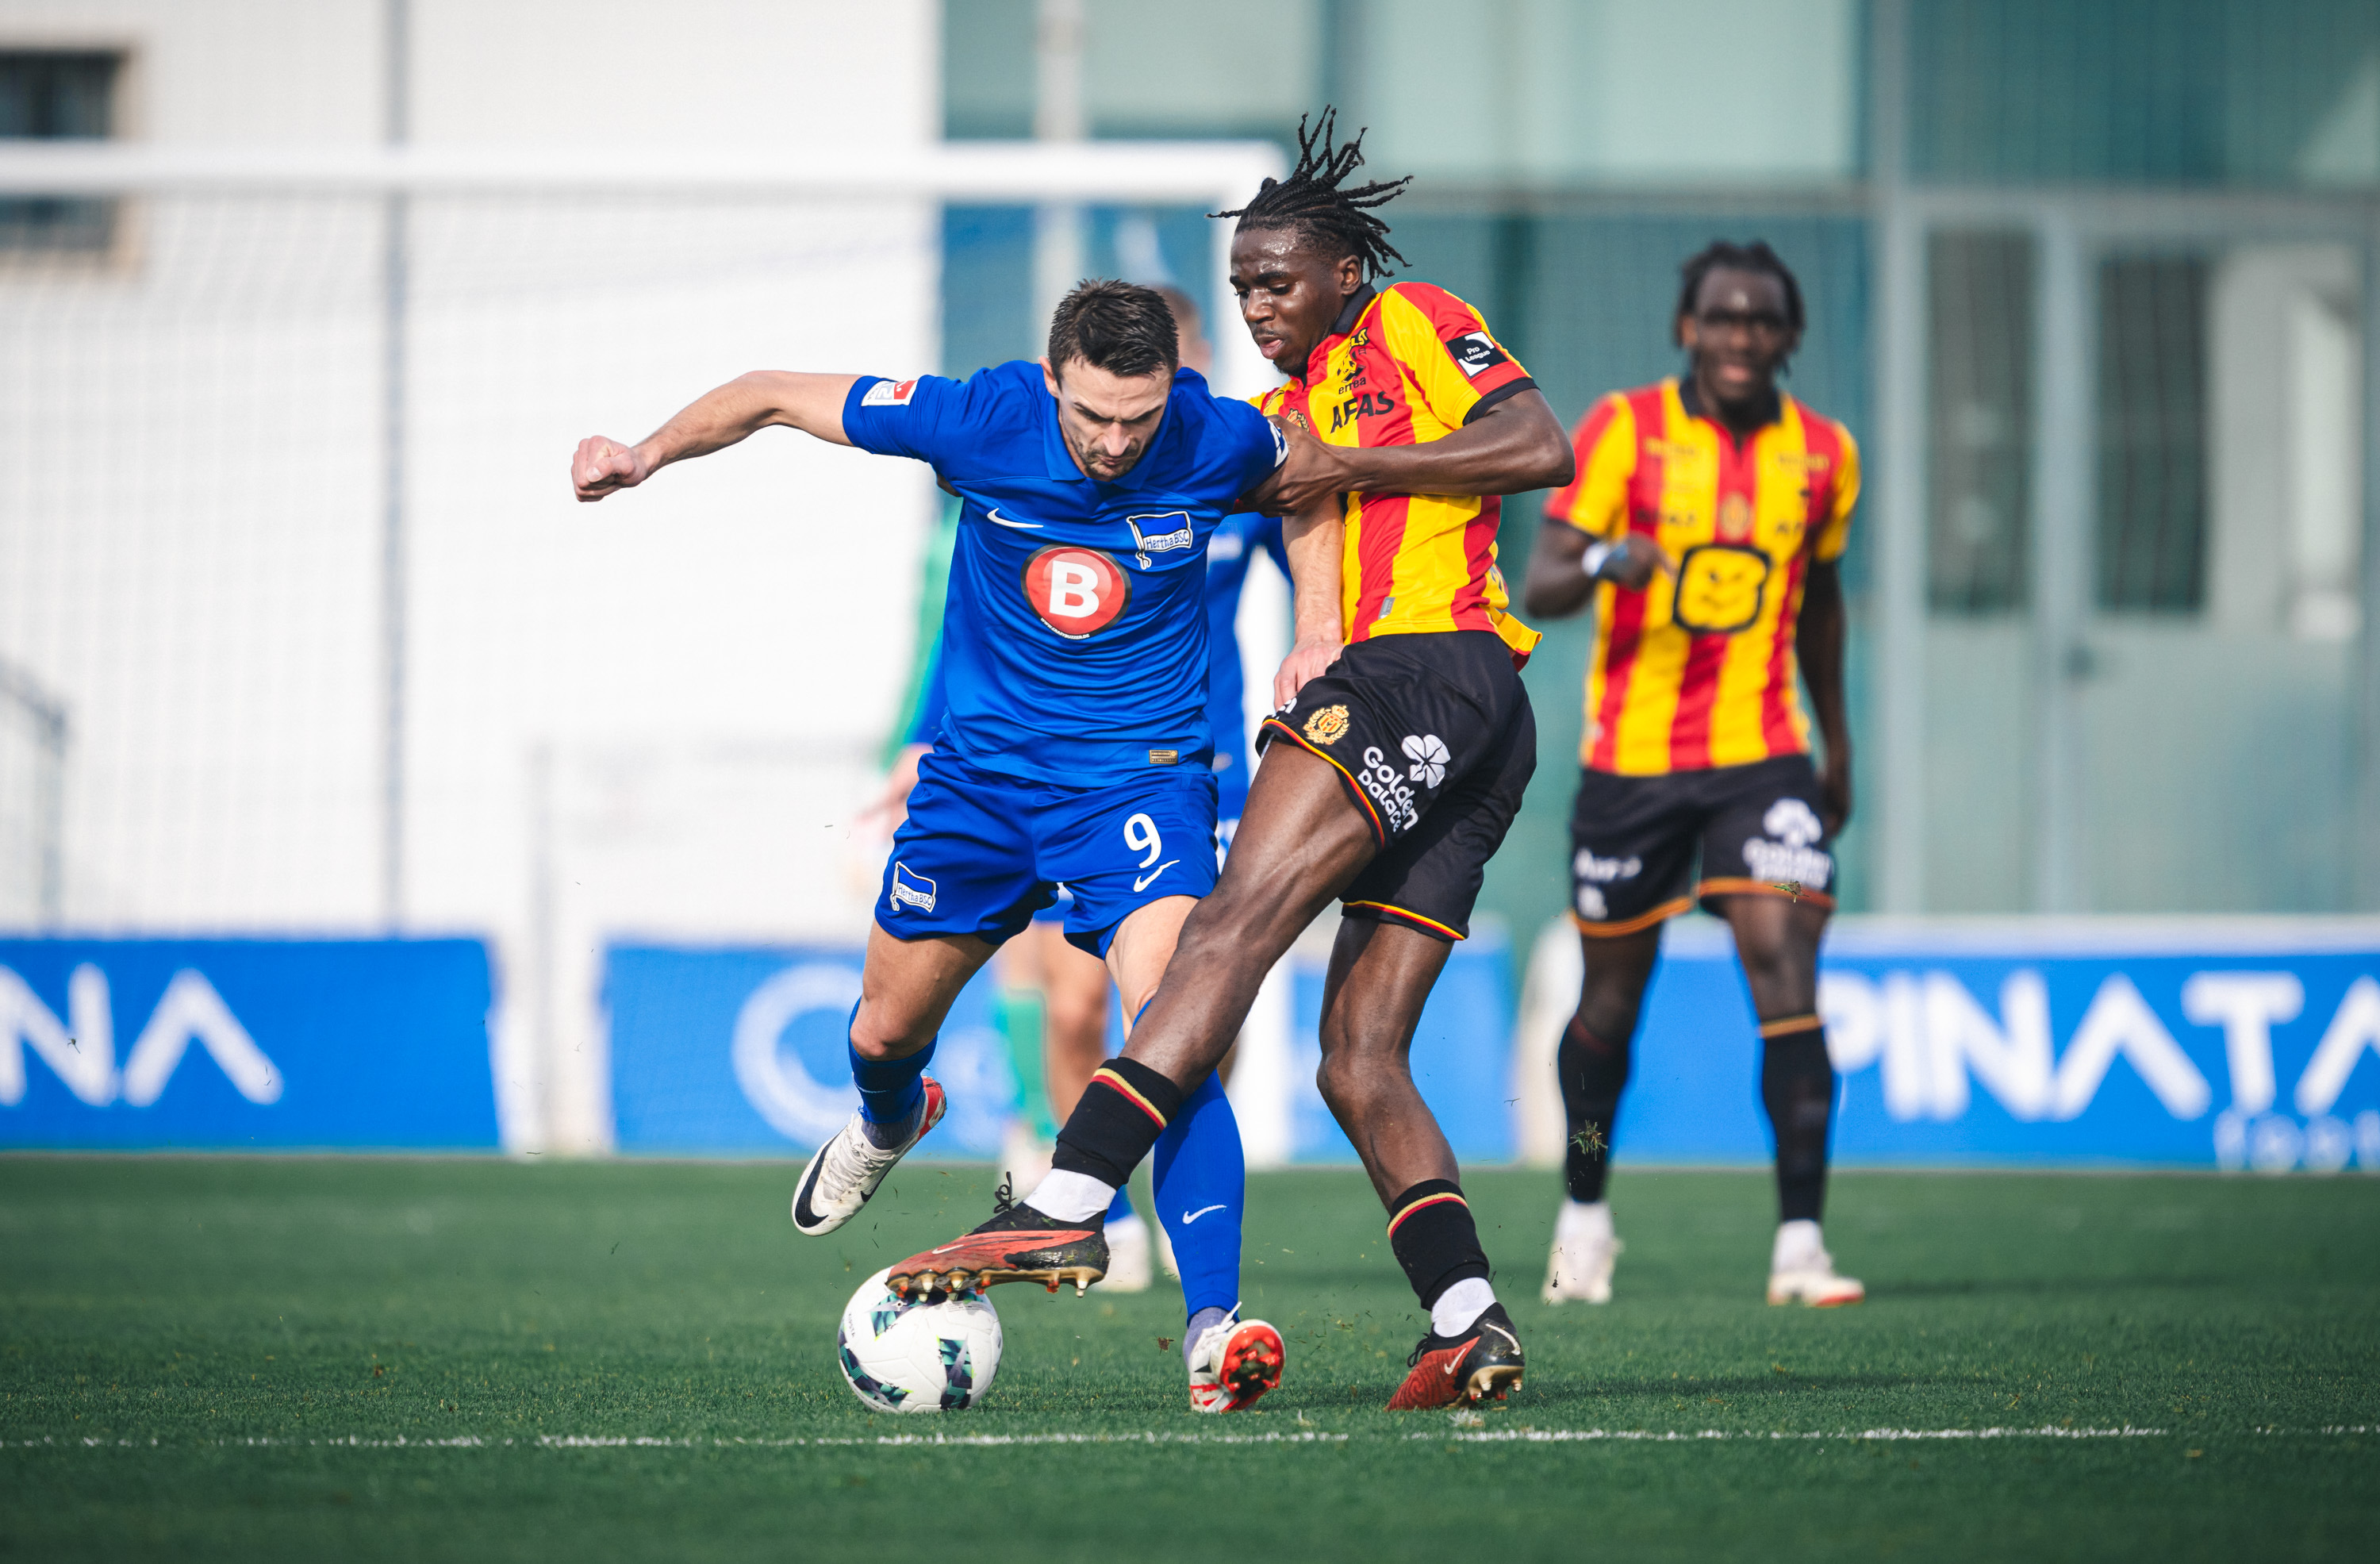 Smail Prevljak tackles a Mechelen player.